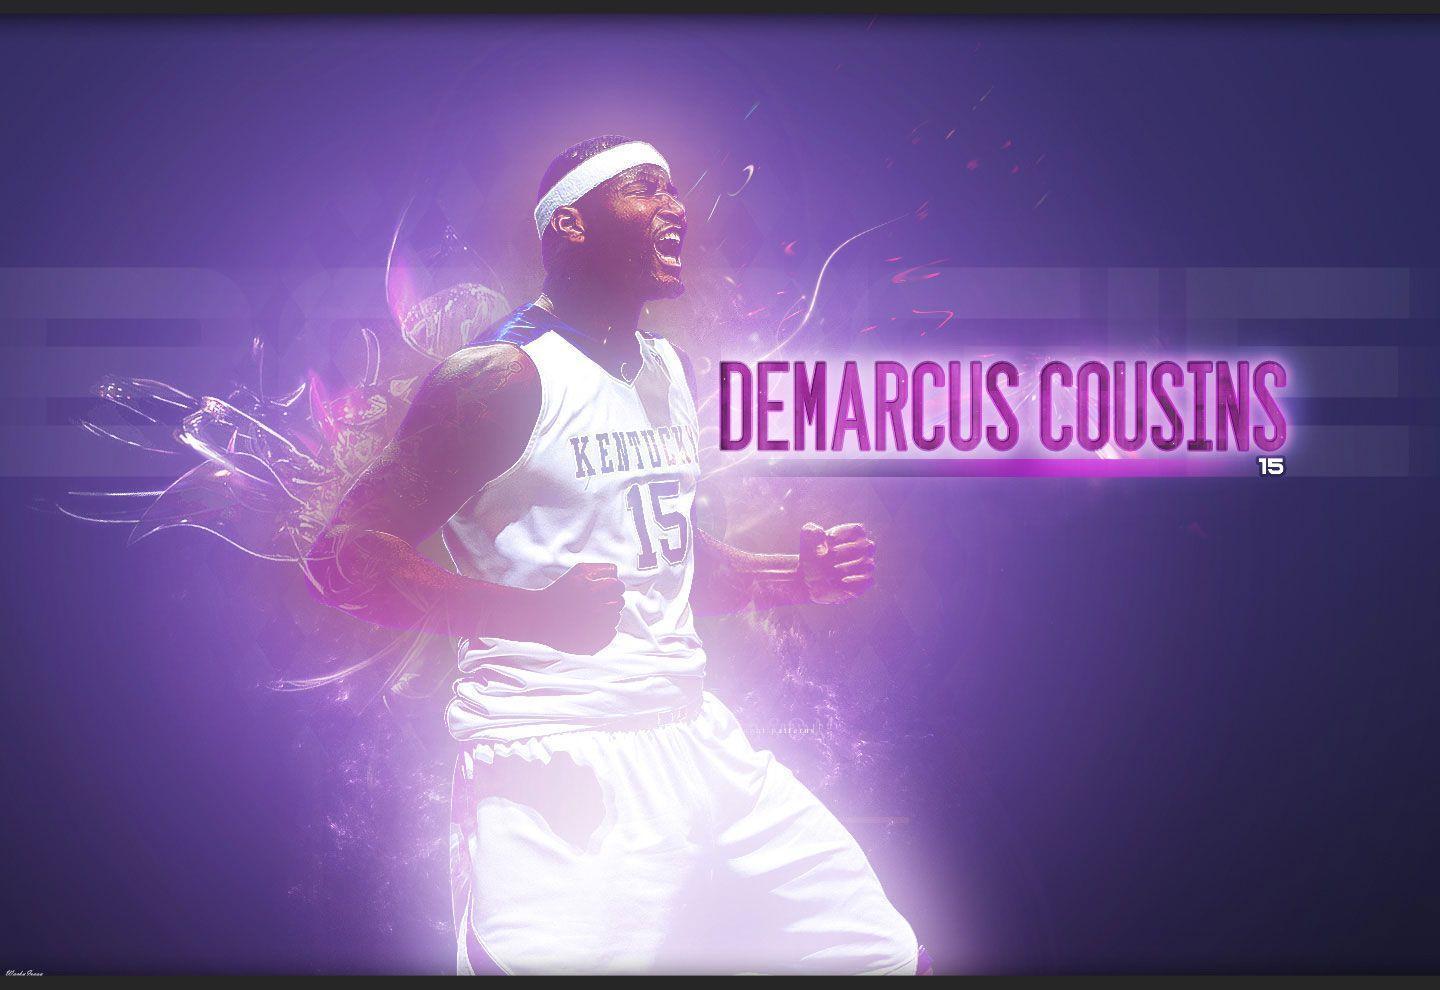 DeMarcus Cousins Kentucky Wildcats Wallpaper. Basketball